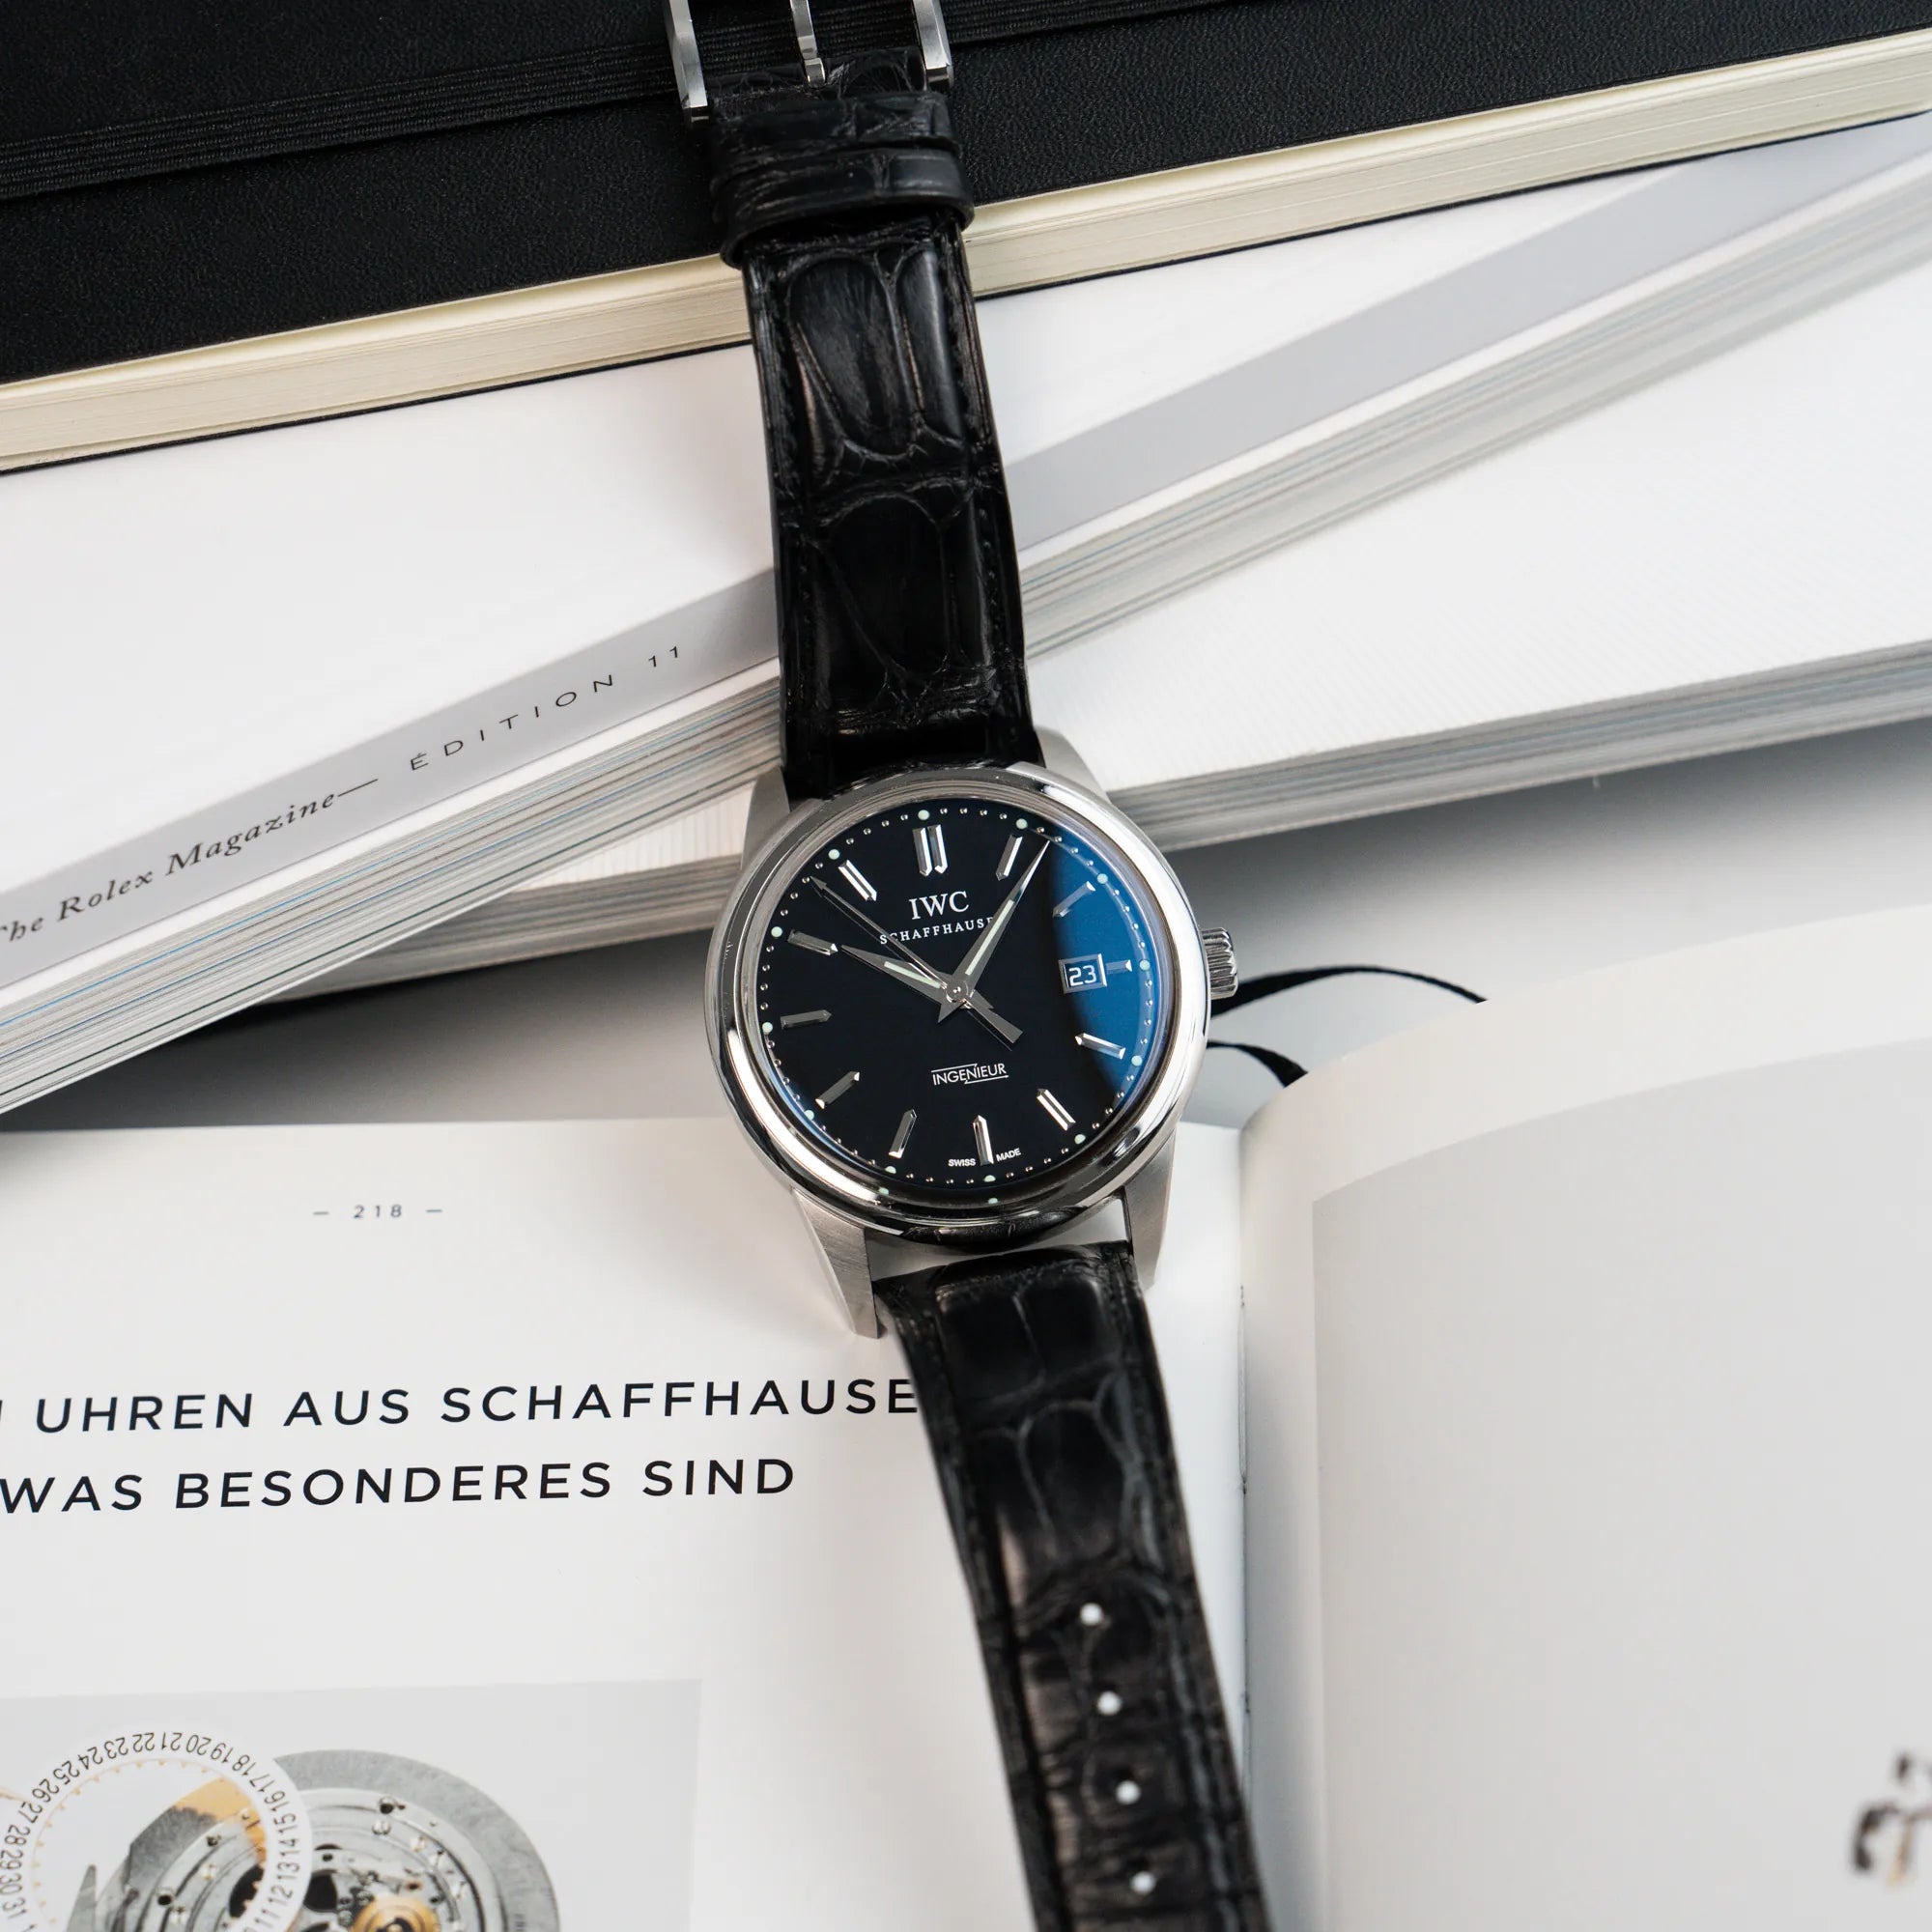 Produktfotografie der IWC Schaffhausen Uhr "Ingenieur" mit der Referenz IW323301 mit schwarzem Zifferblatt, die auf Büchern liegt